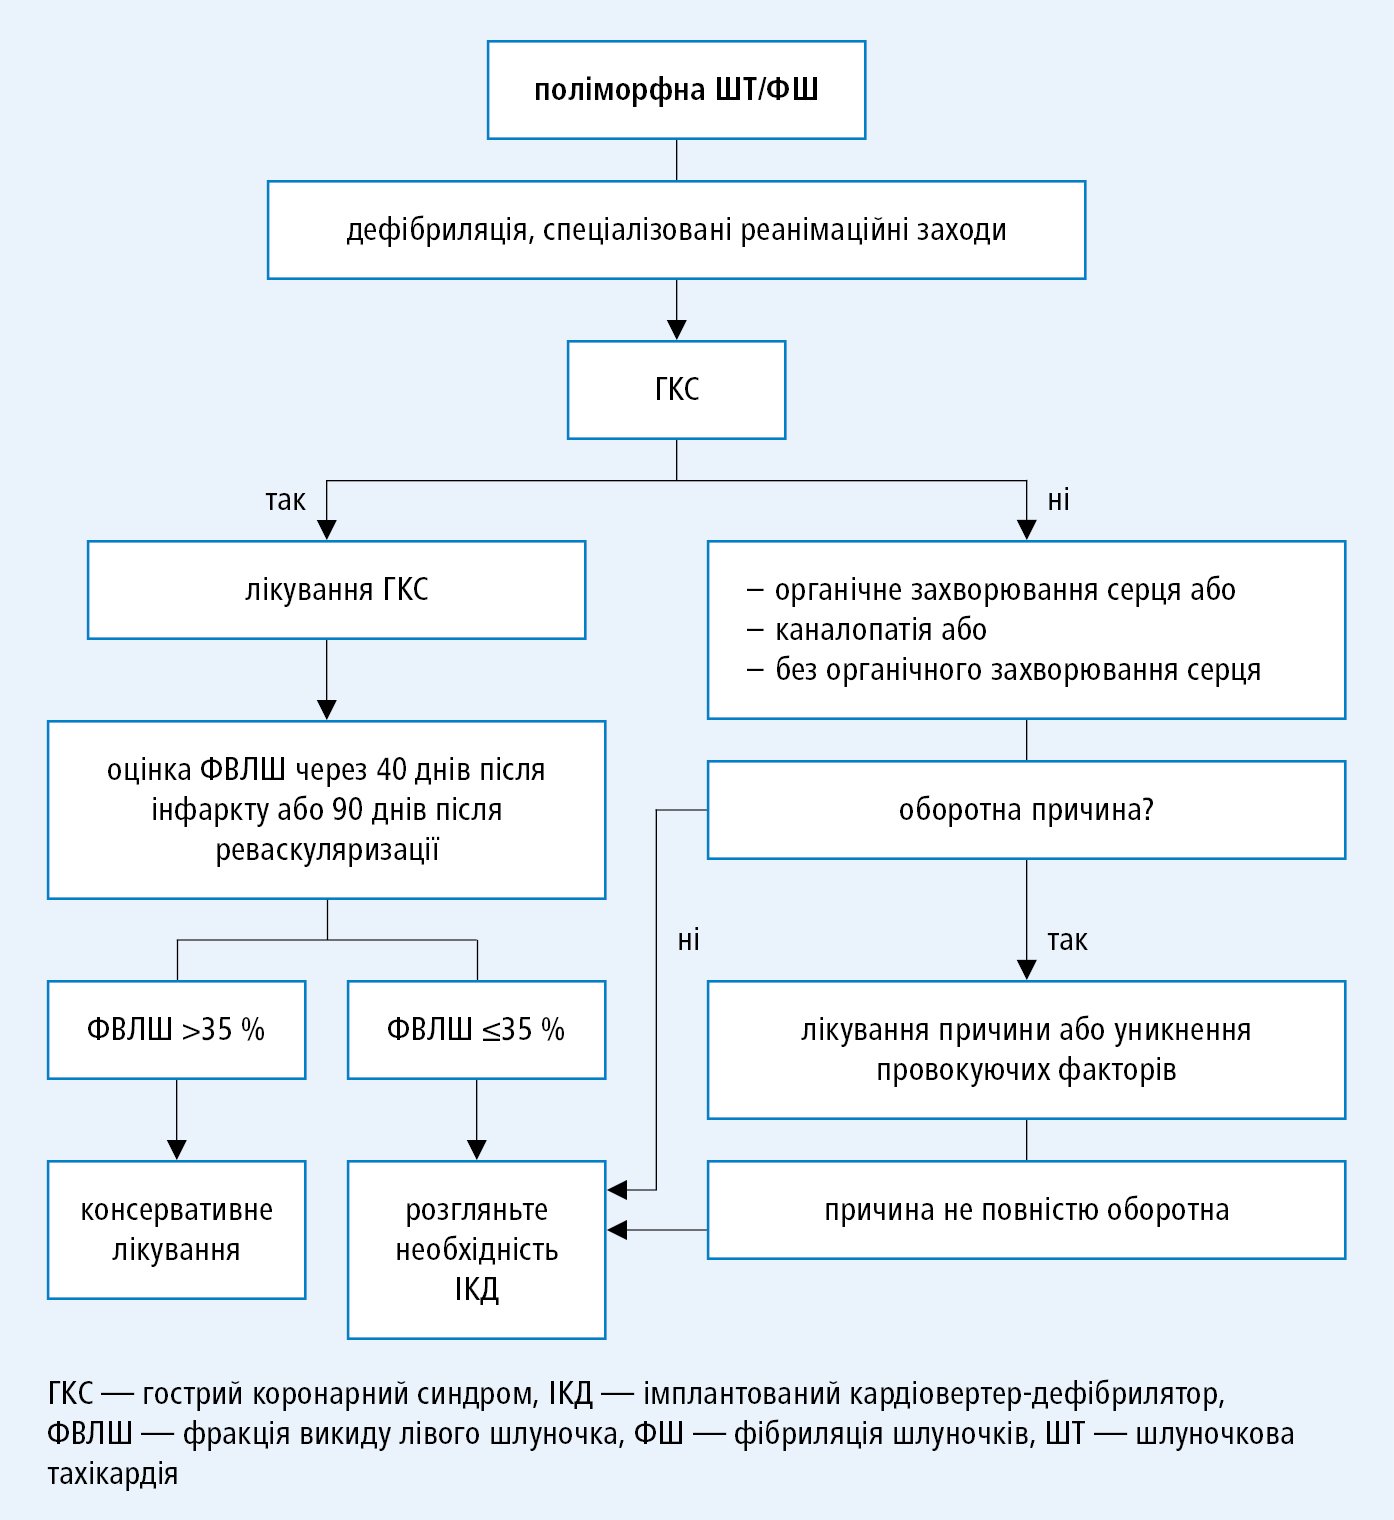 Тактика у хворого з поліморфною ШТ/ФШ (на основі спільних рекомендацій EHRA, HRS та APHRS, модифіковано)